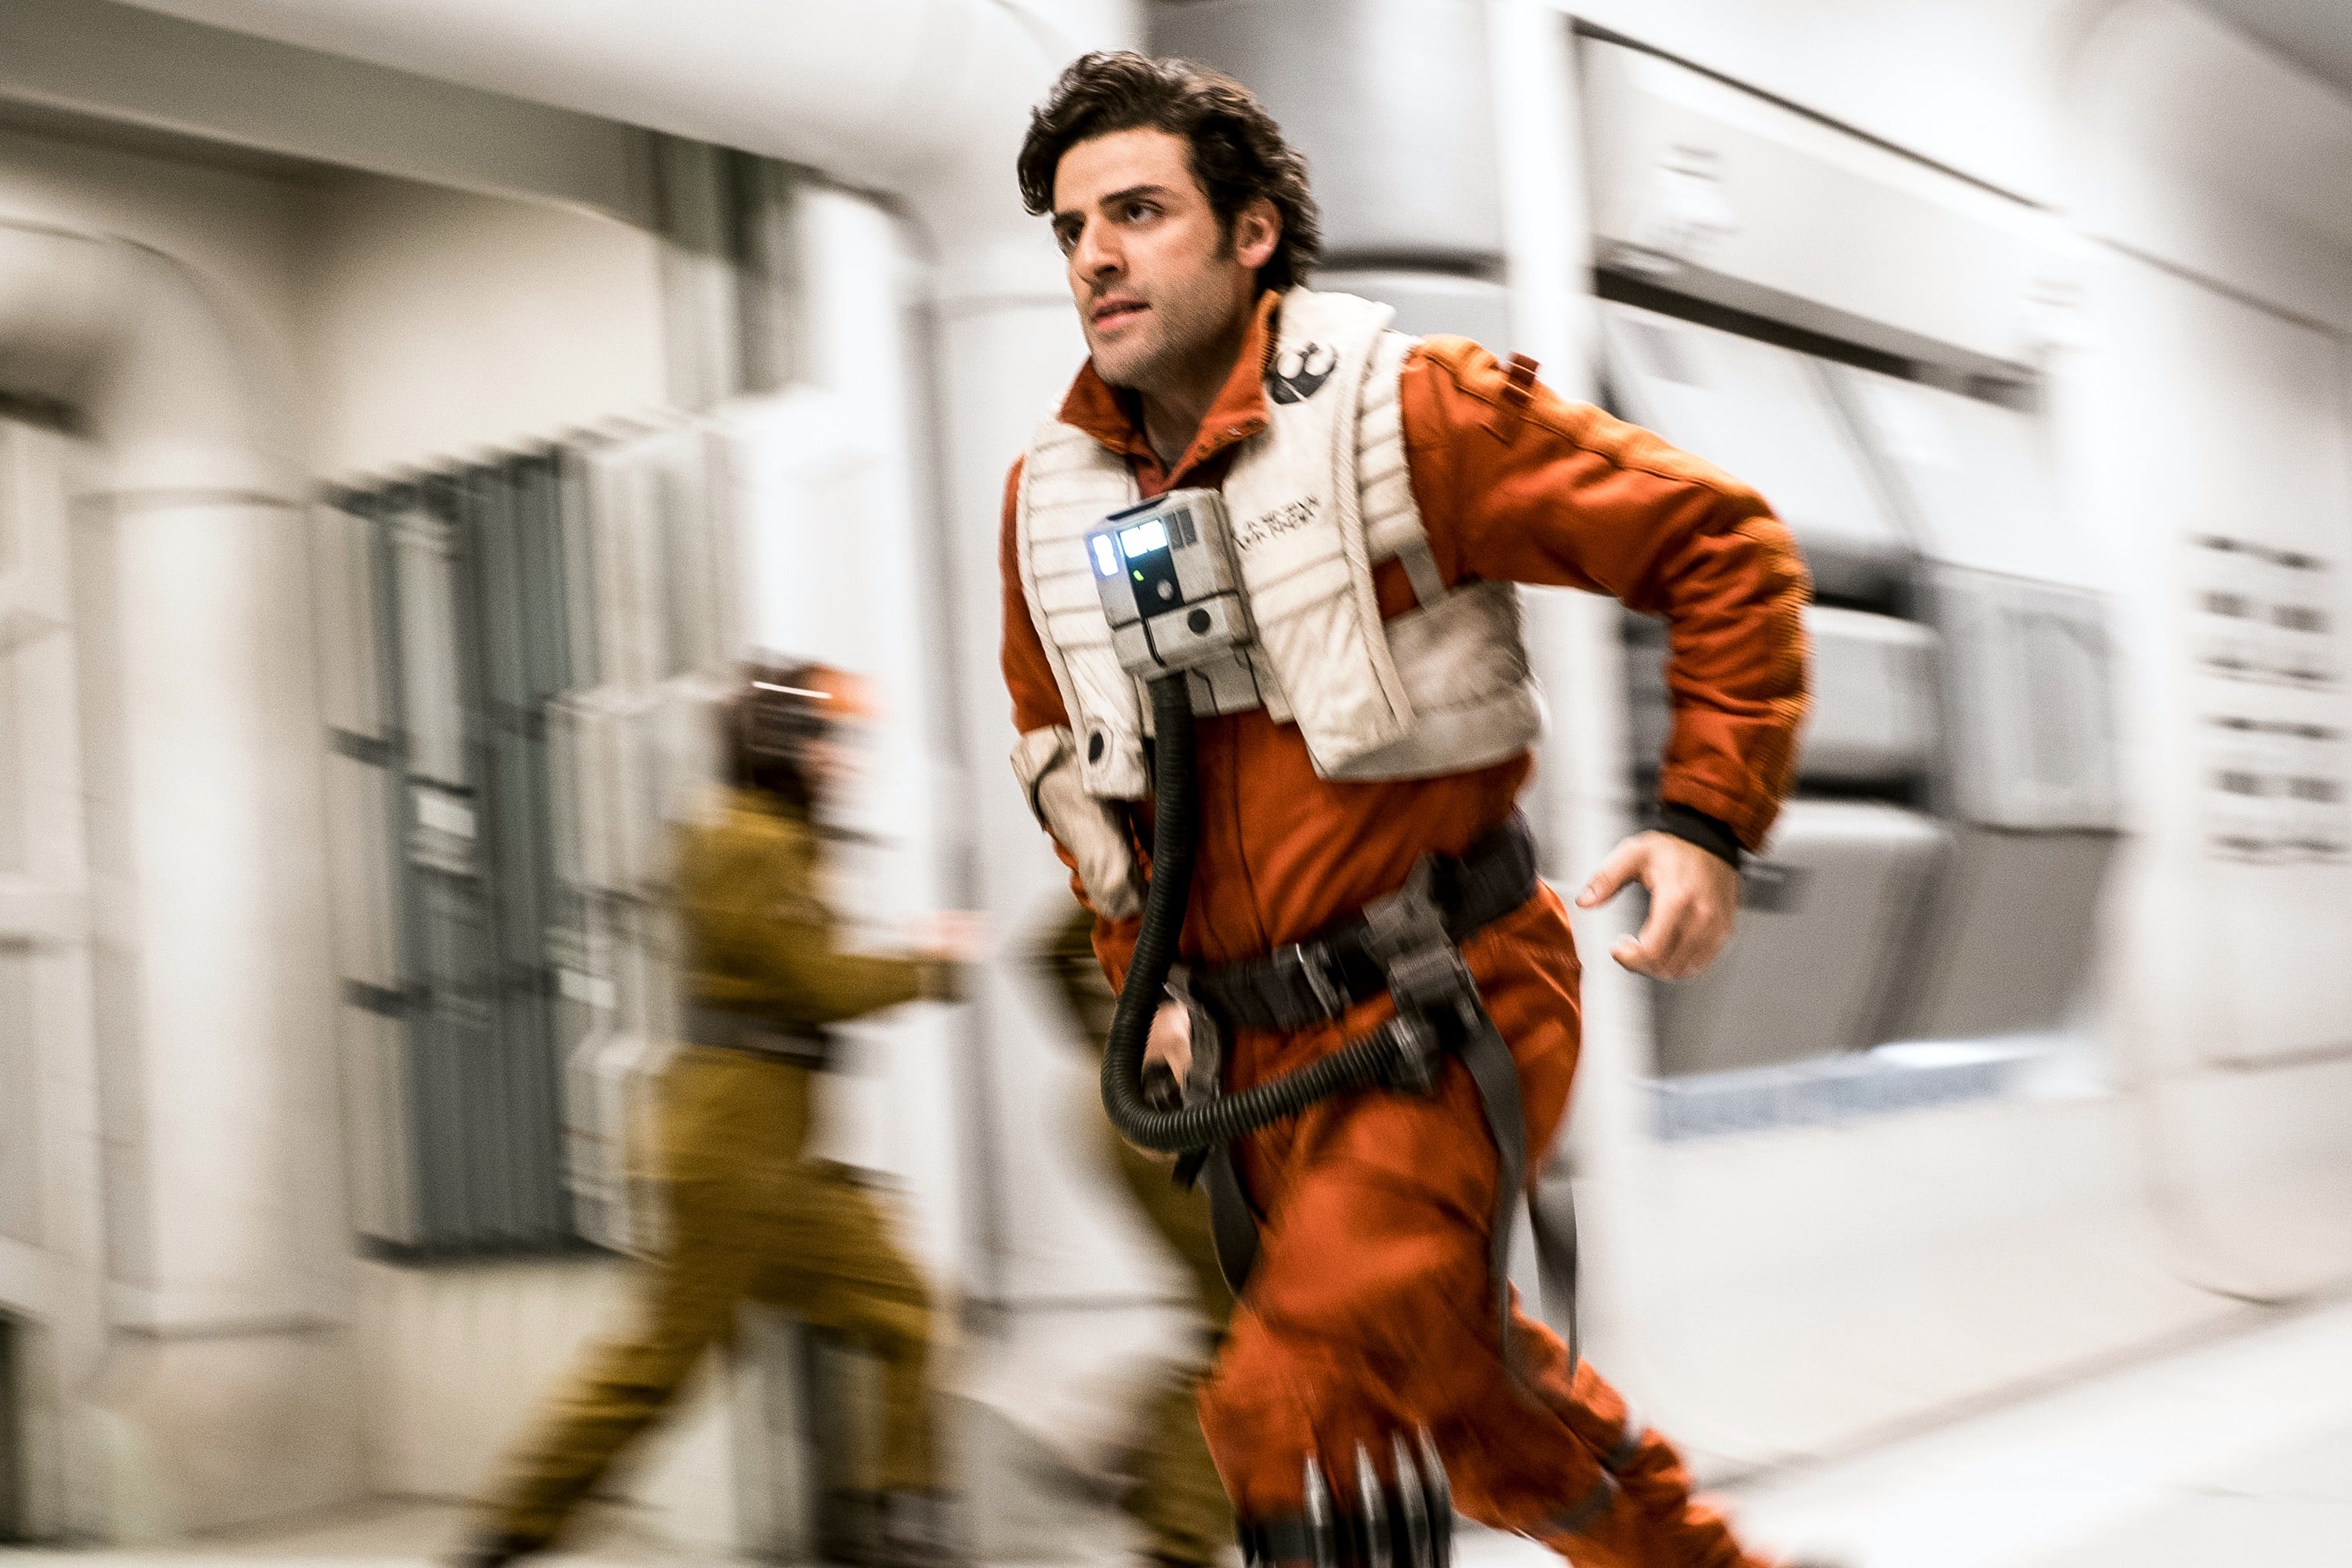 Mark Hamill Hints at Identity of 'Last Jedi' in Star Wars